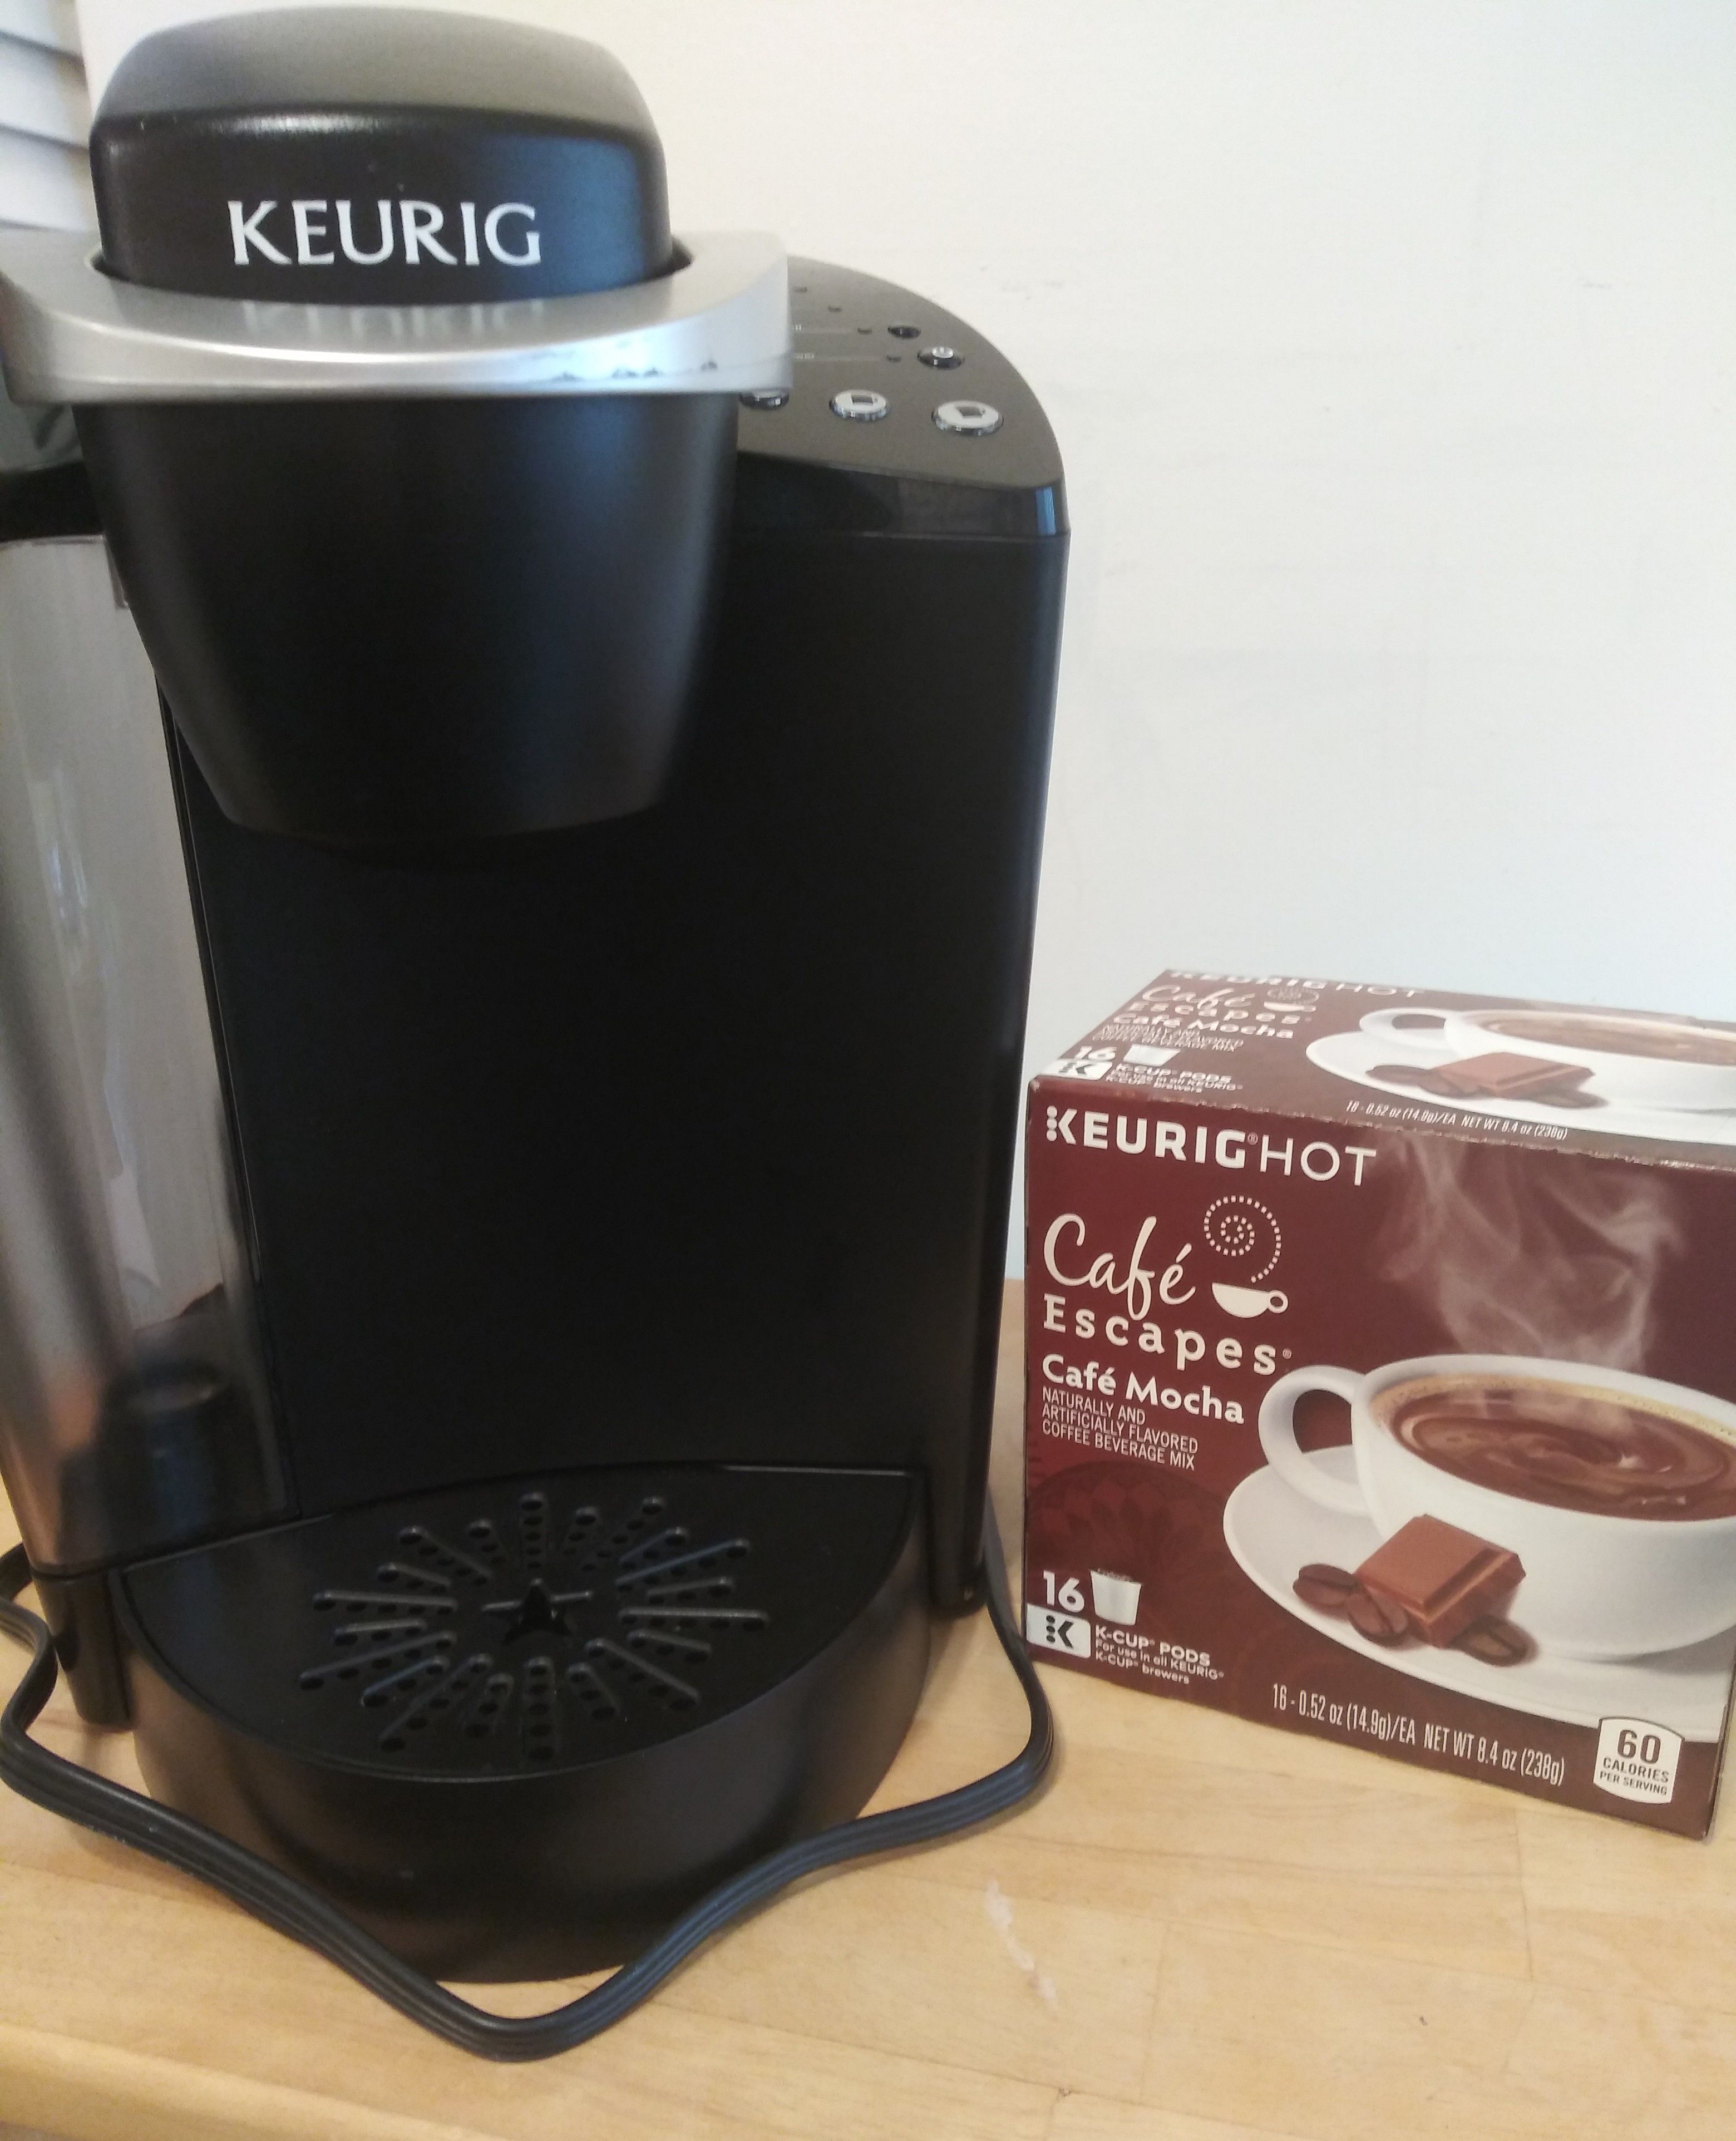 Keurig K40 Coffee Maker, like new